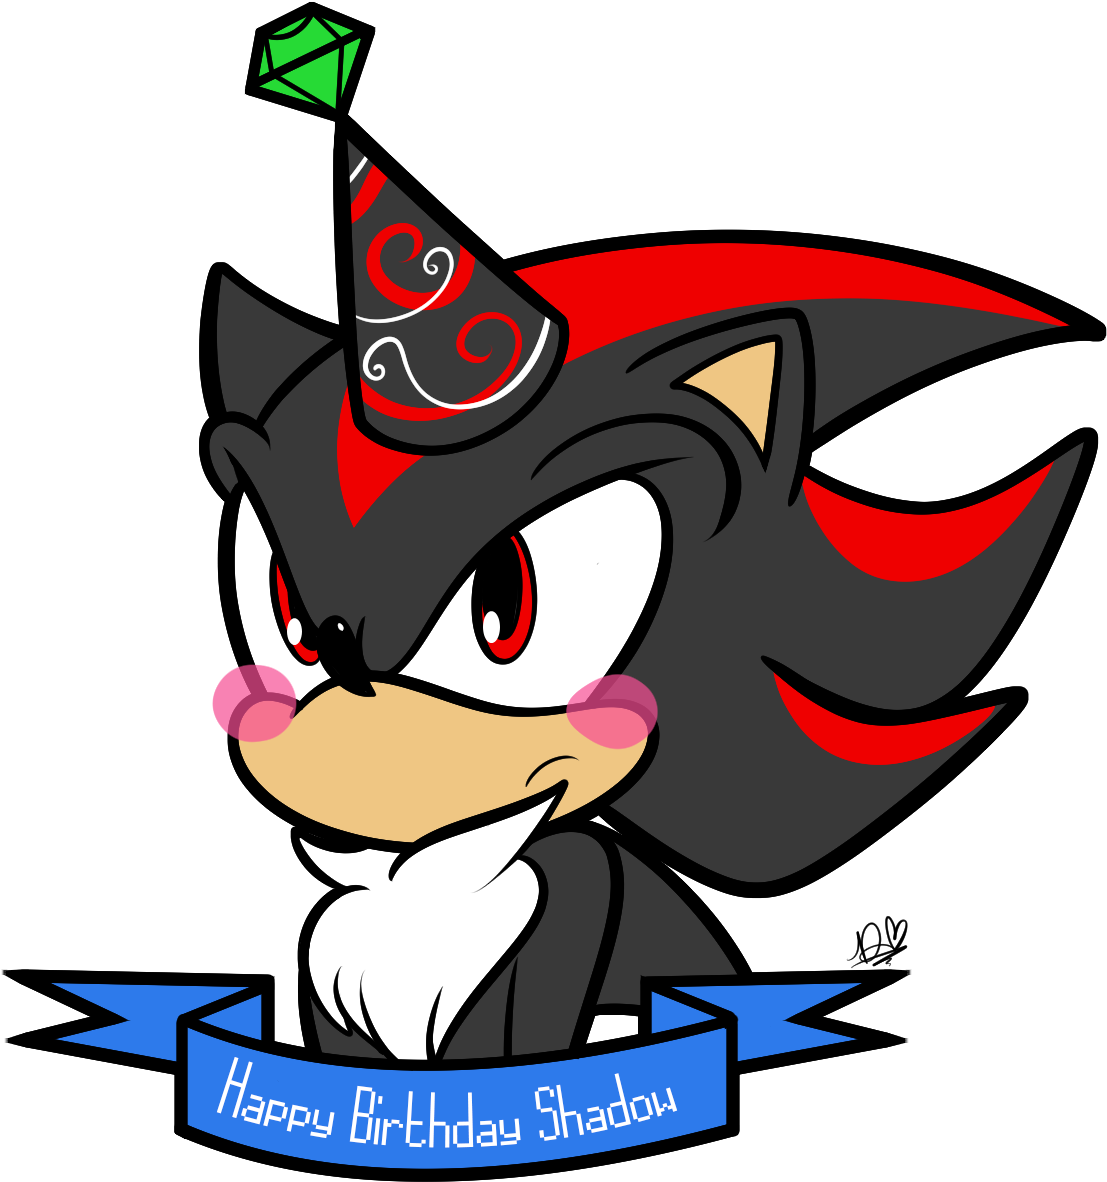 Happy Birthday Shadow - Shadow The Hedgehog (1148x1290)